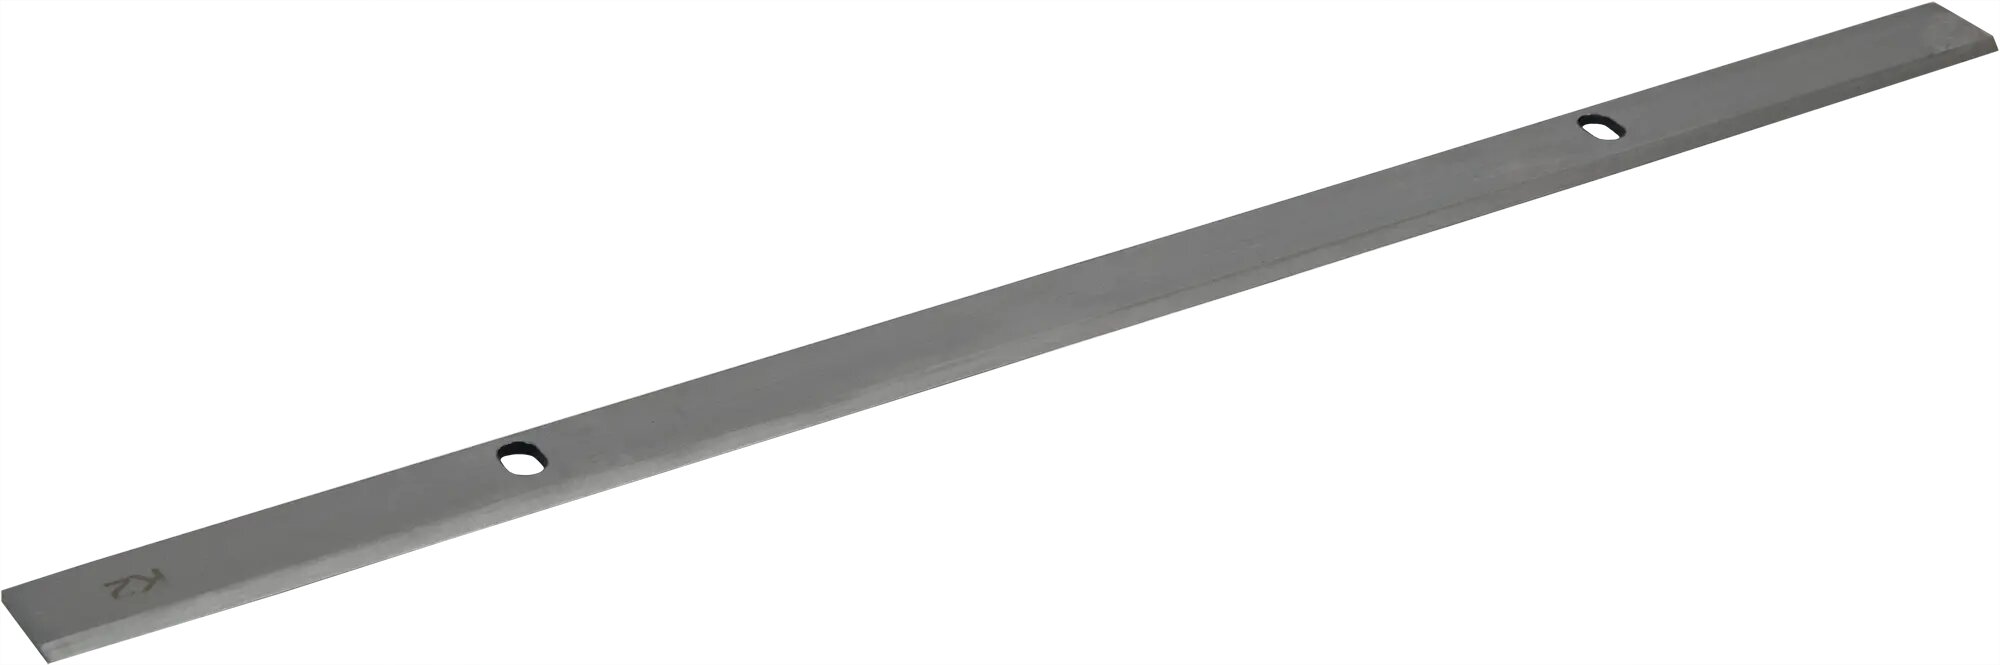 Ножи для рейсмуса Спец БН-332 332x16.5x1.8 мм HCS 2 шт.